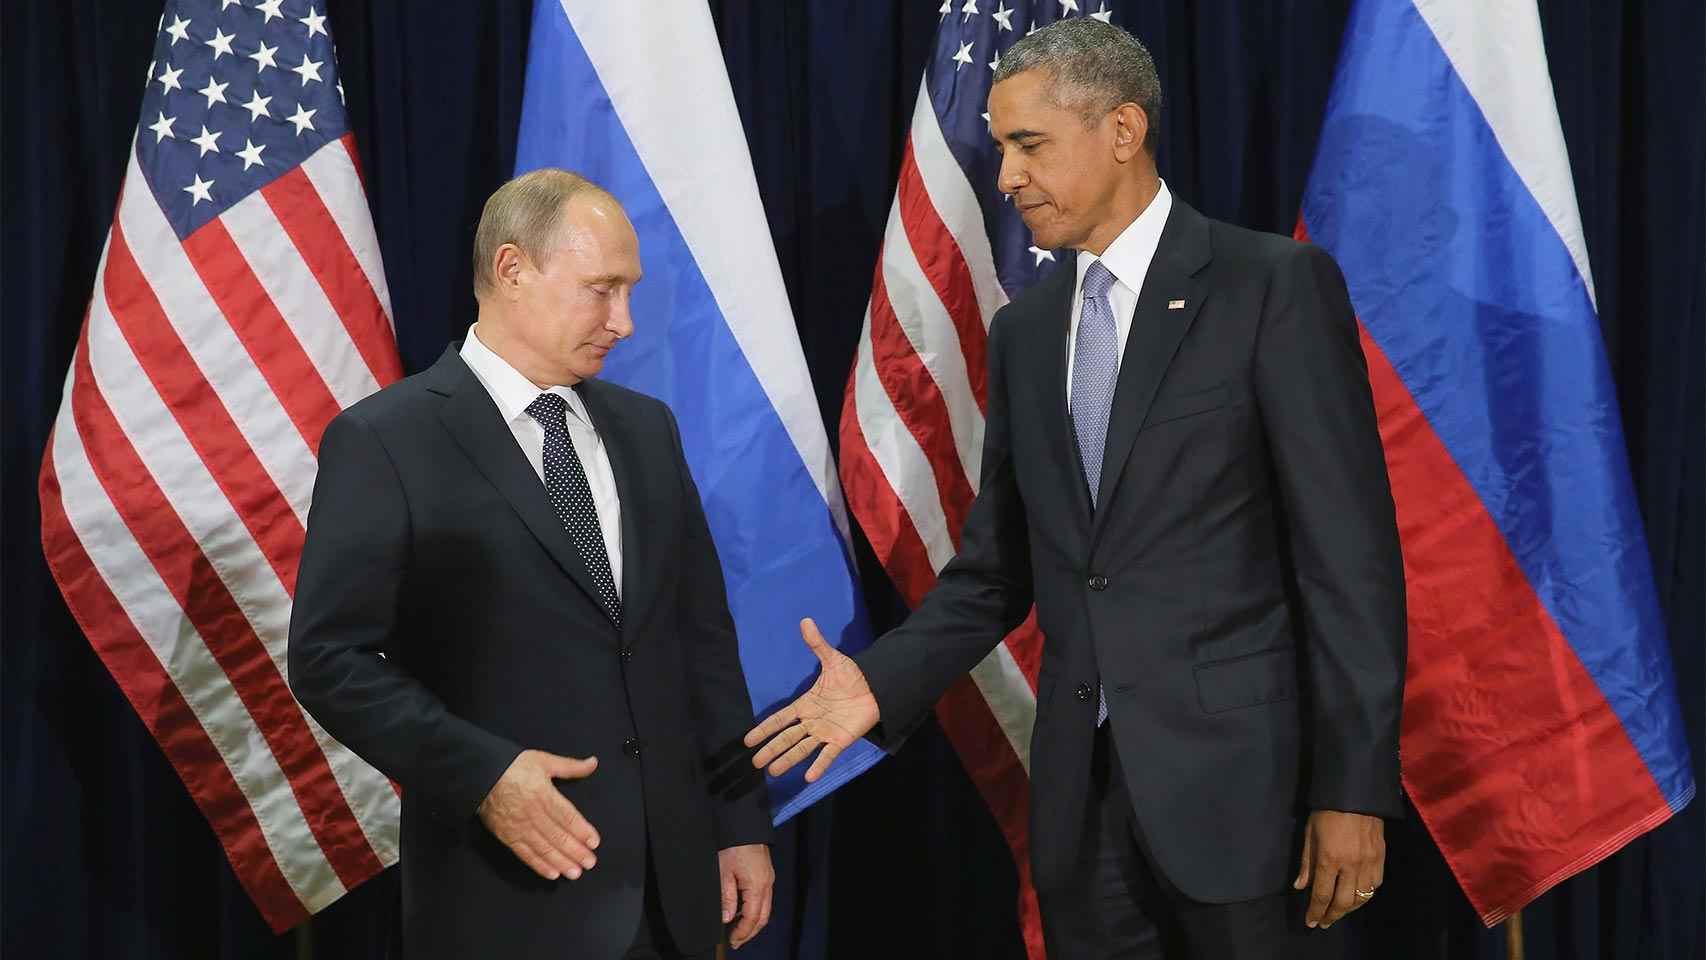 Putin y Obama, dos líderes muy diferentes.